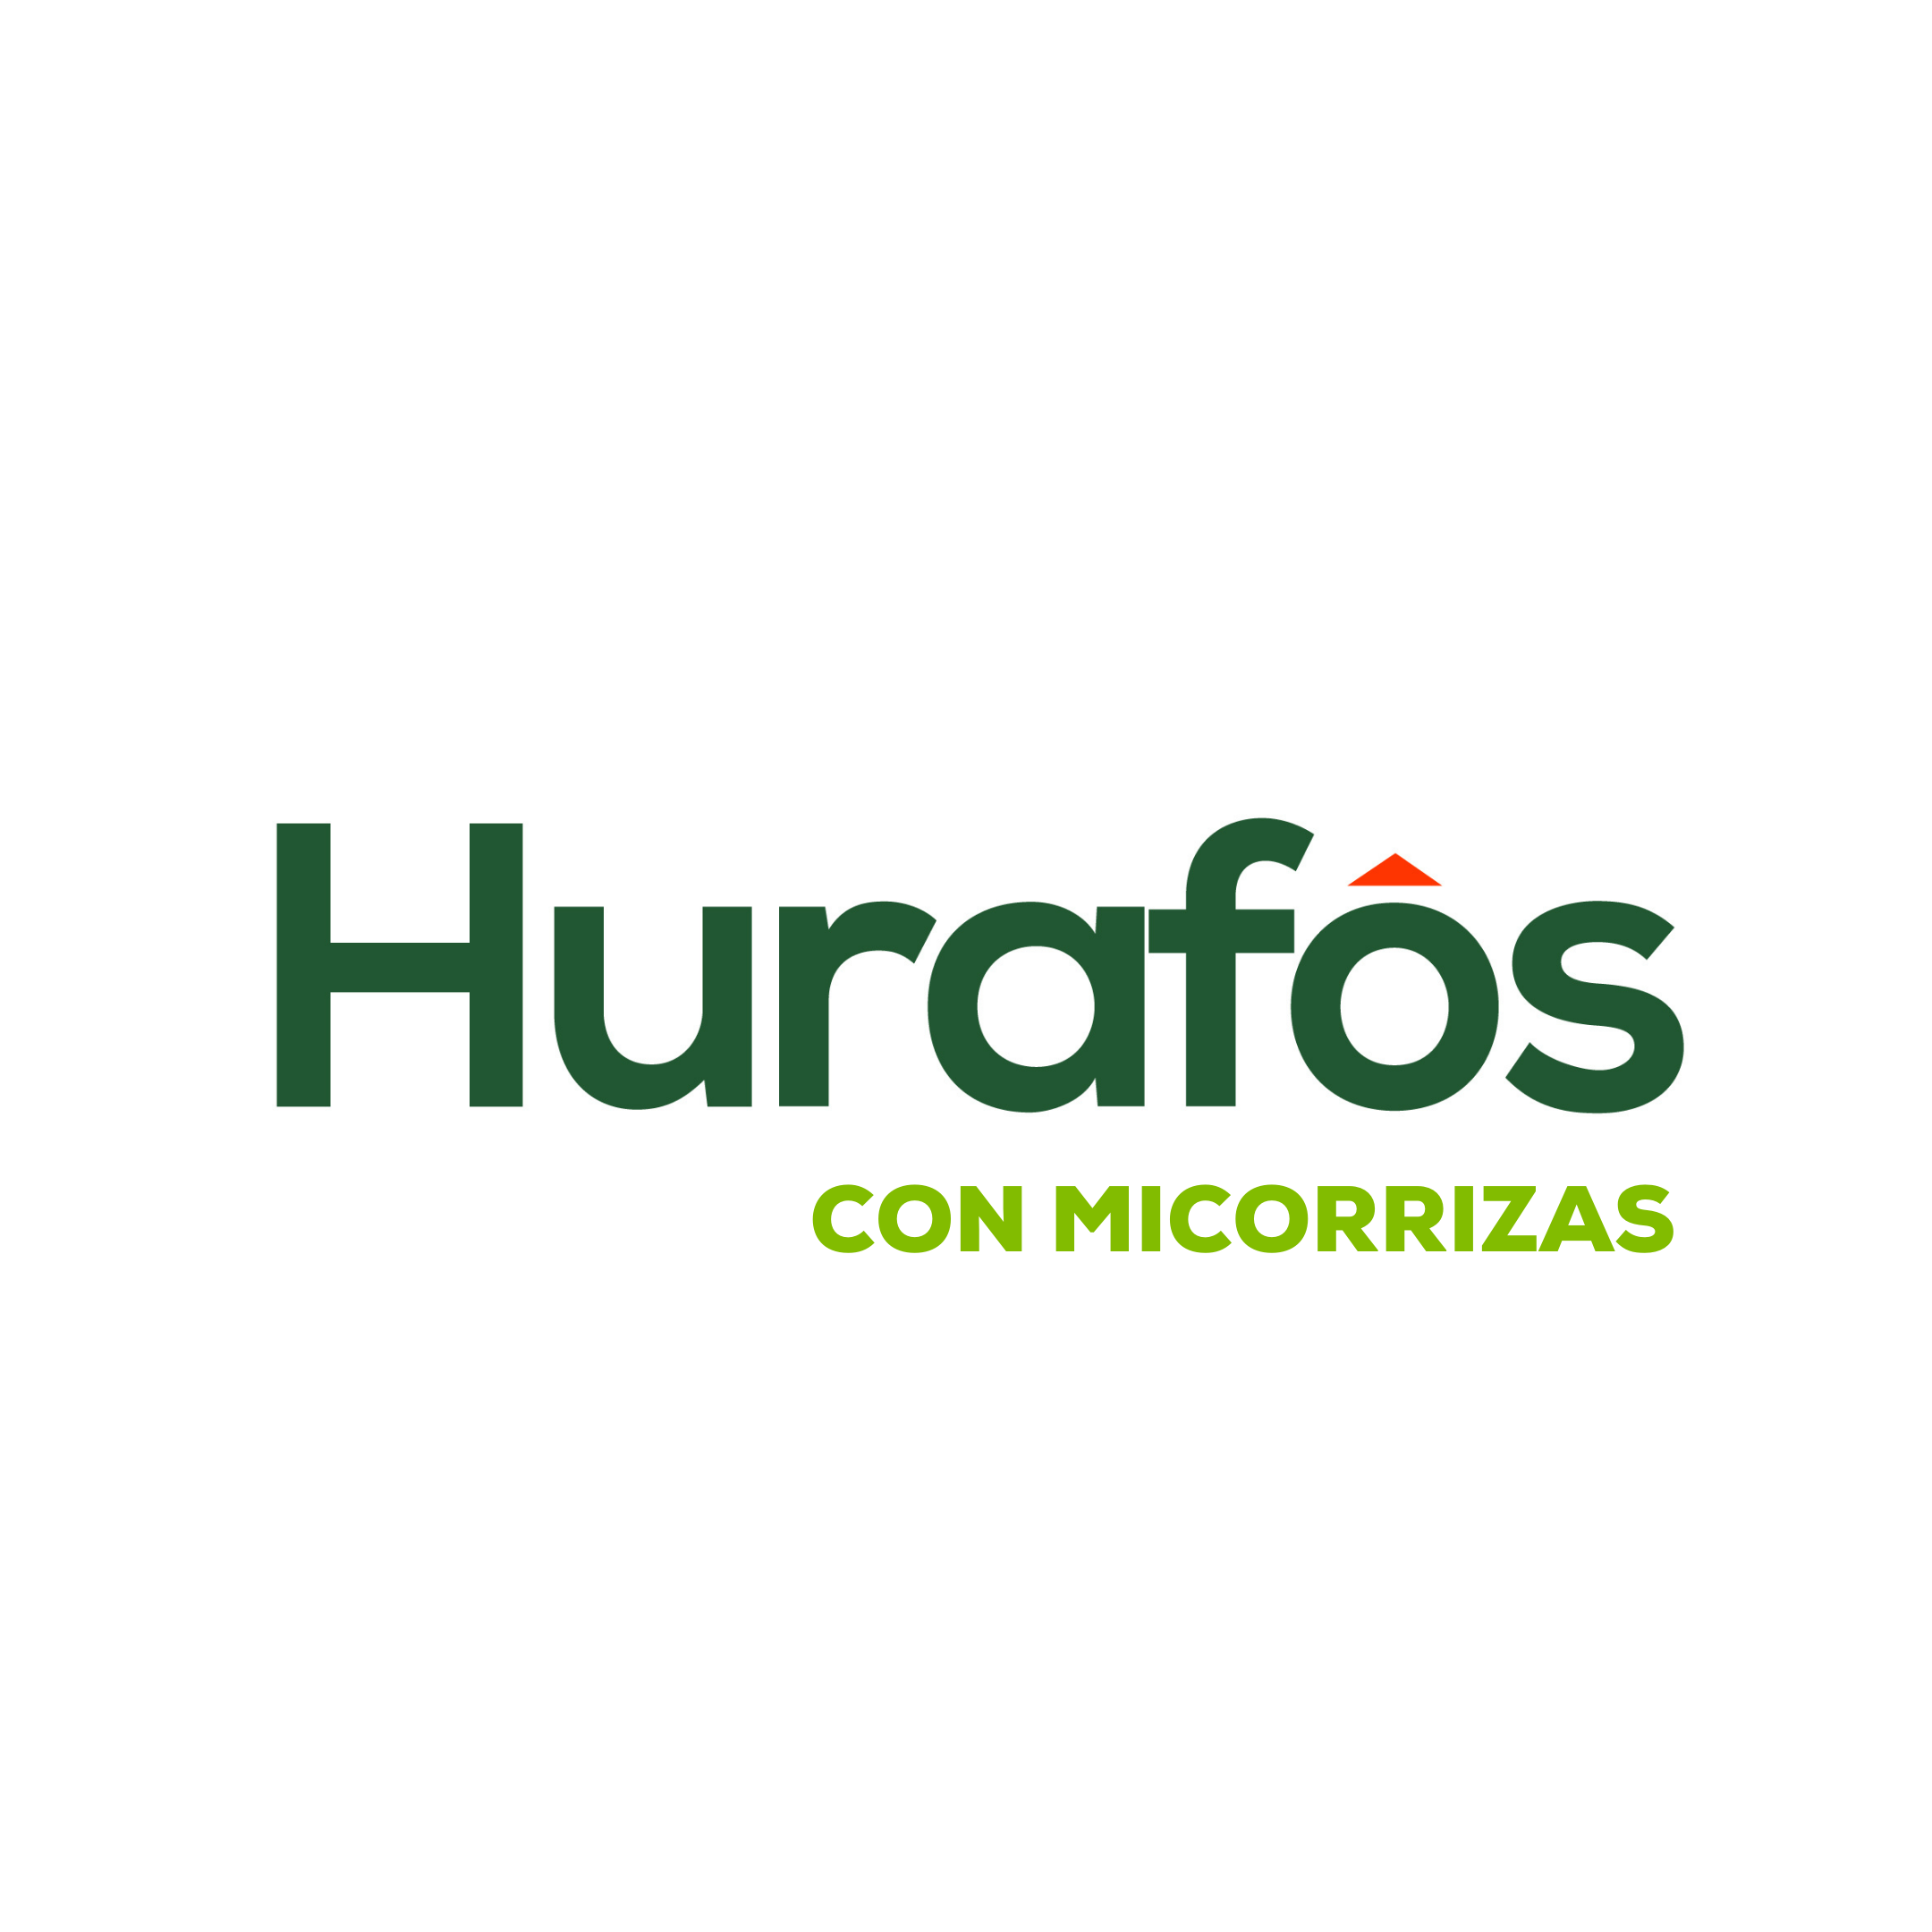 6 Enmienda mineral orgánica con microorganismos Abonamos Hurafos con  Micorrizas.png